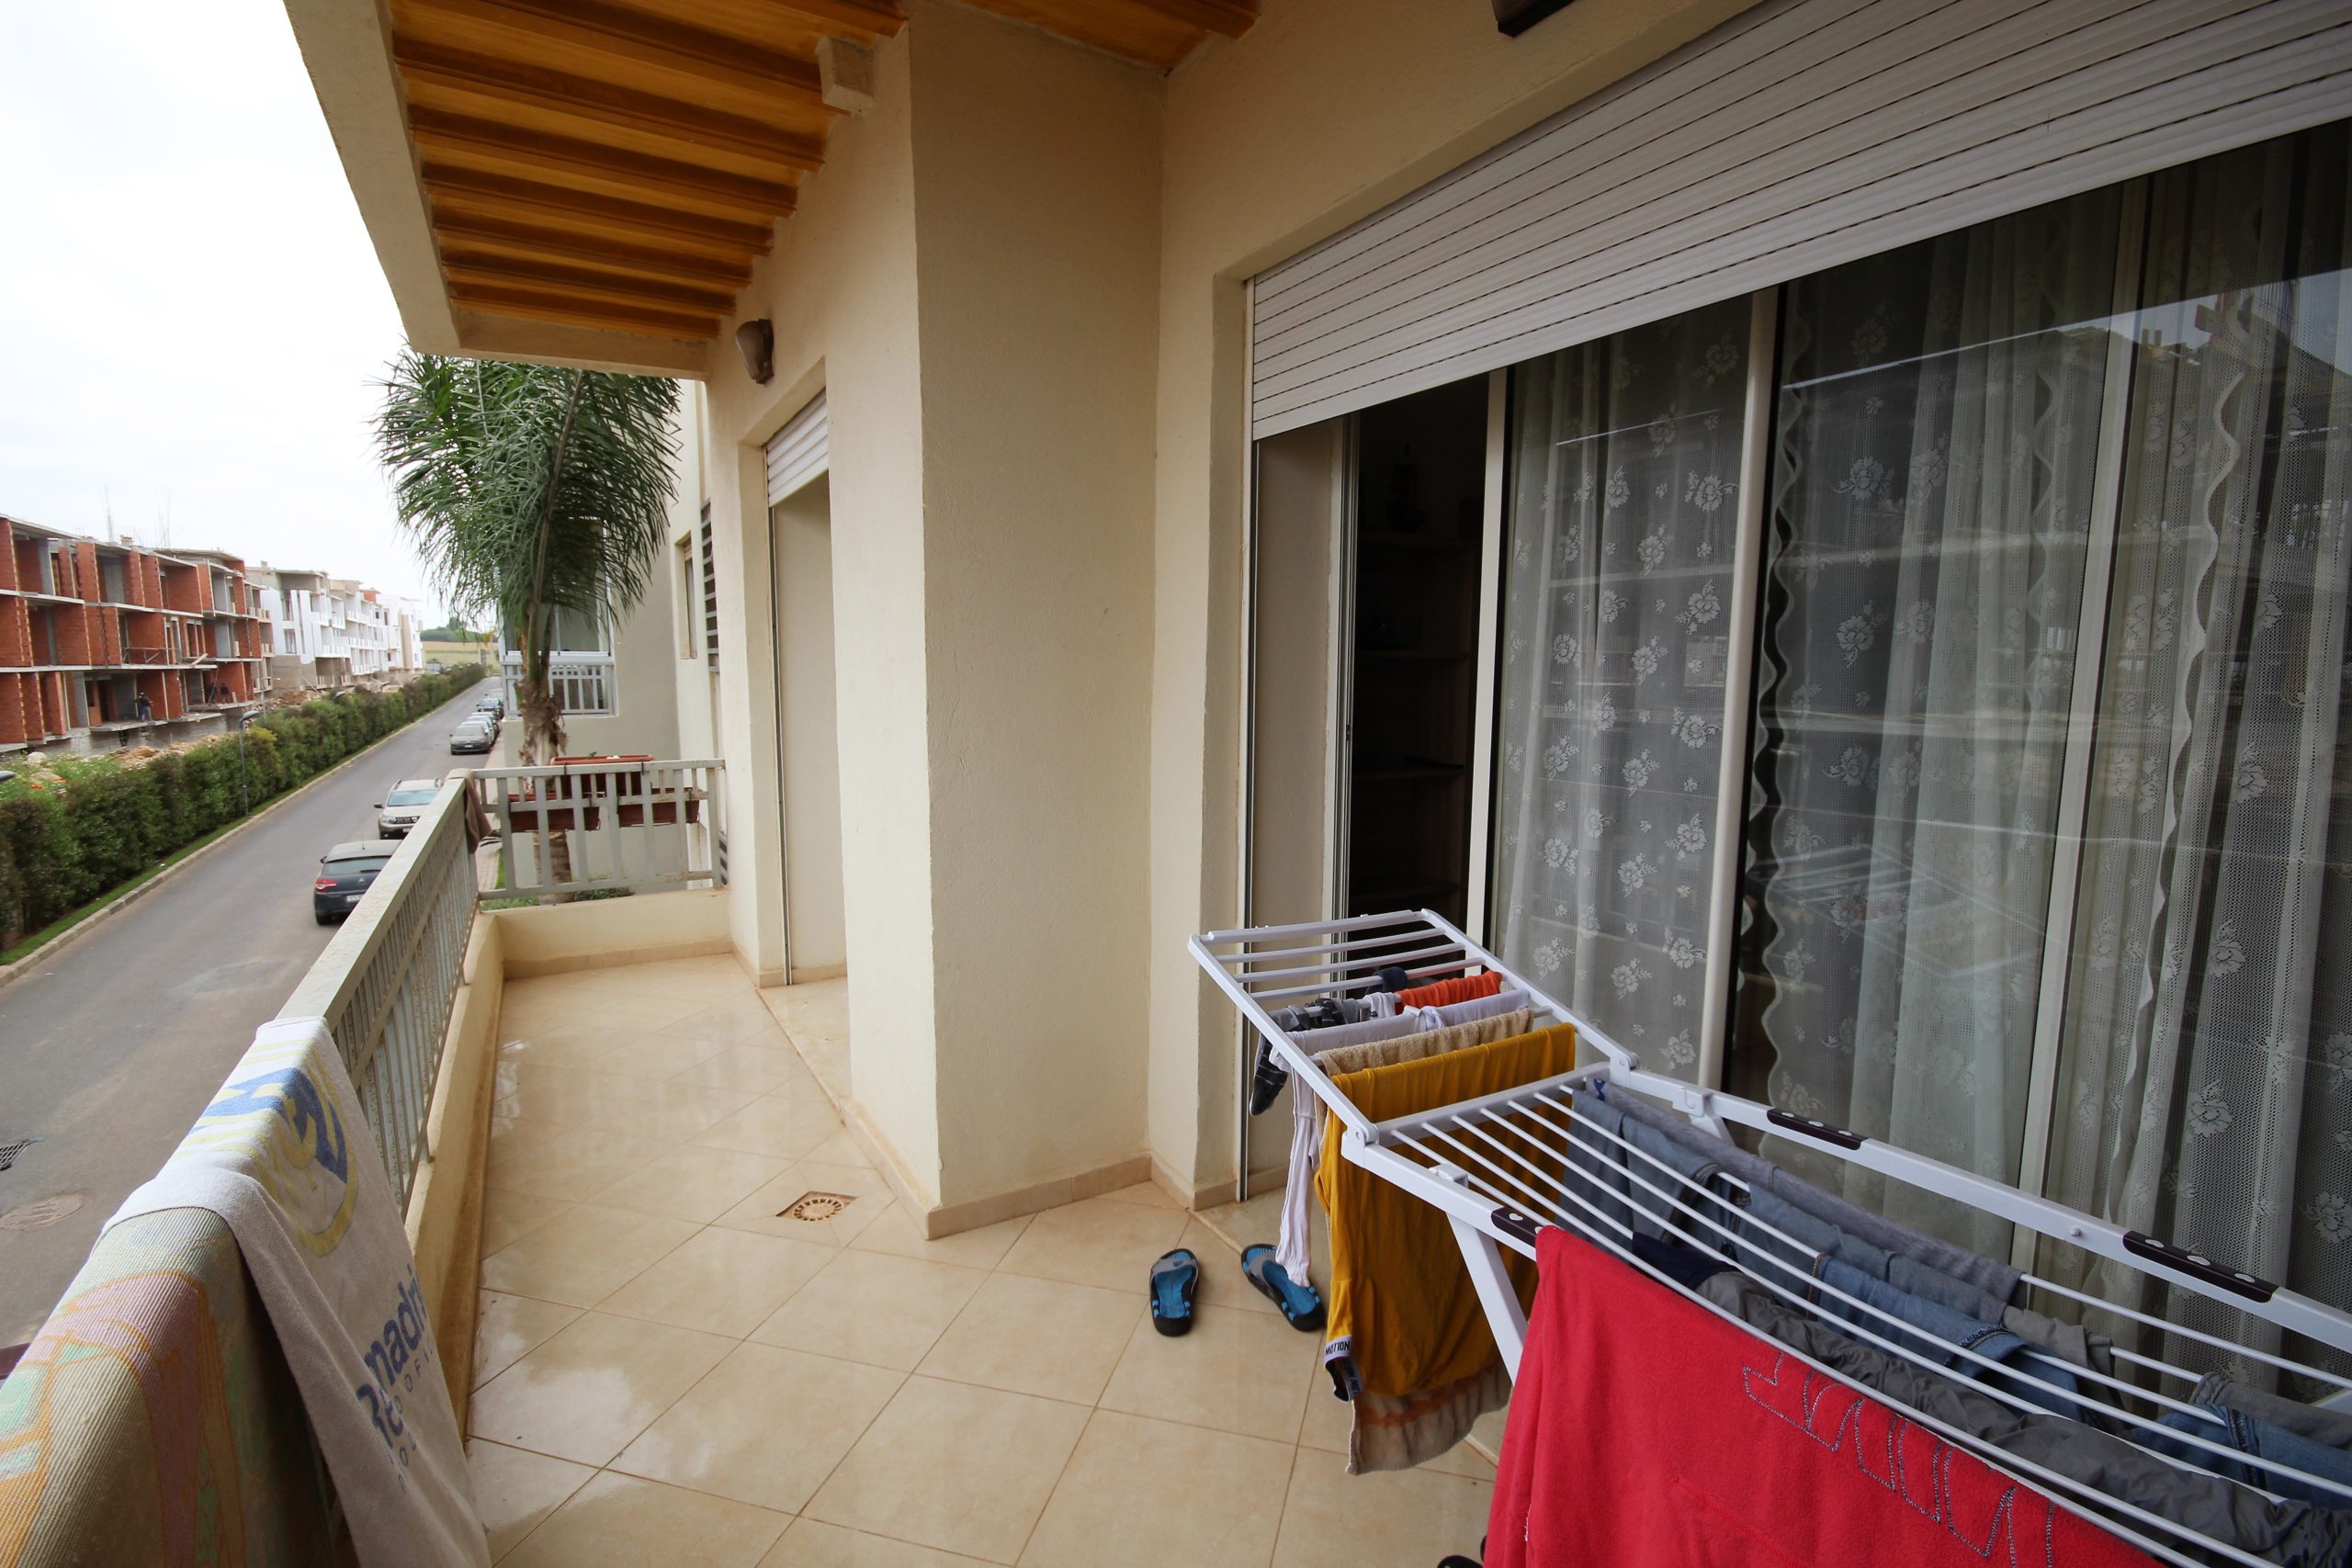 Maroc, Dar Bouazza à saisir appartement meublé 2 ch salon terrasse à très bon prix